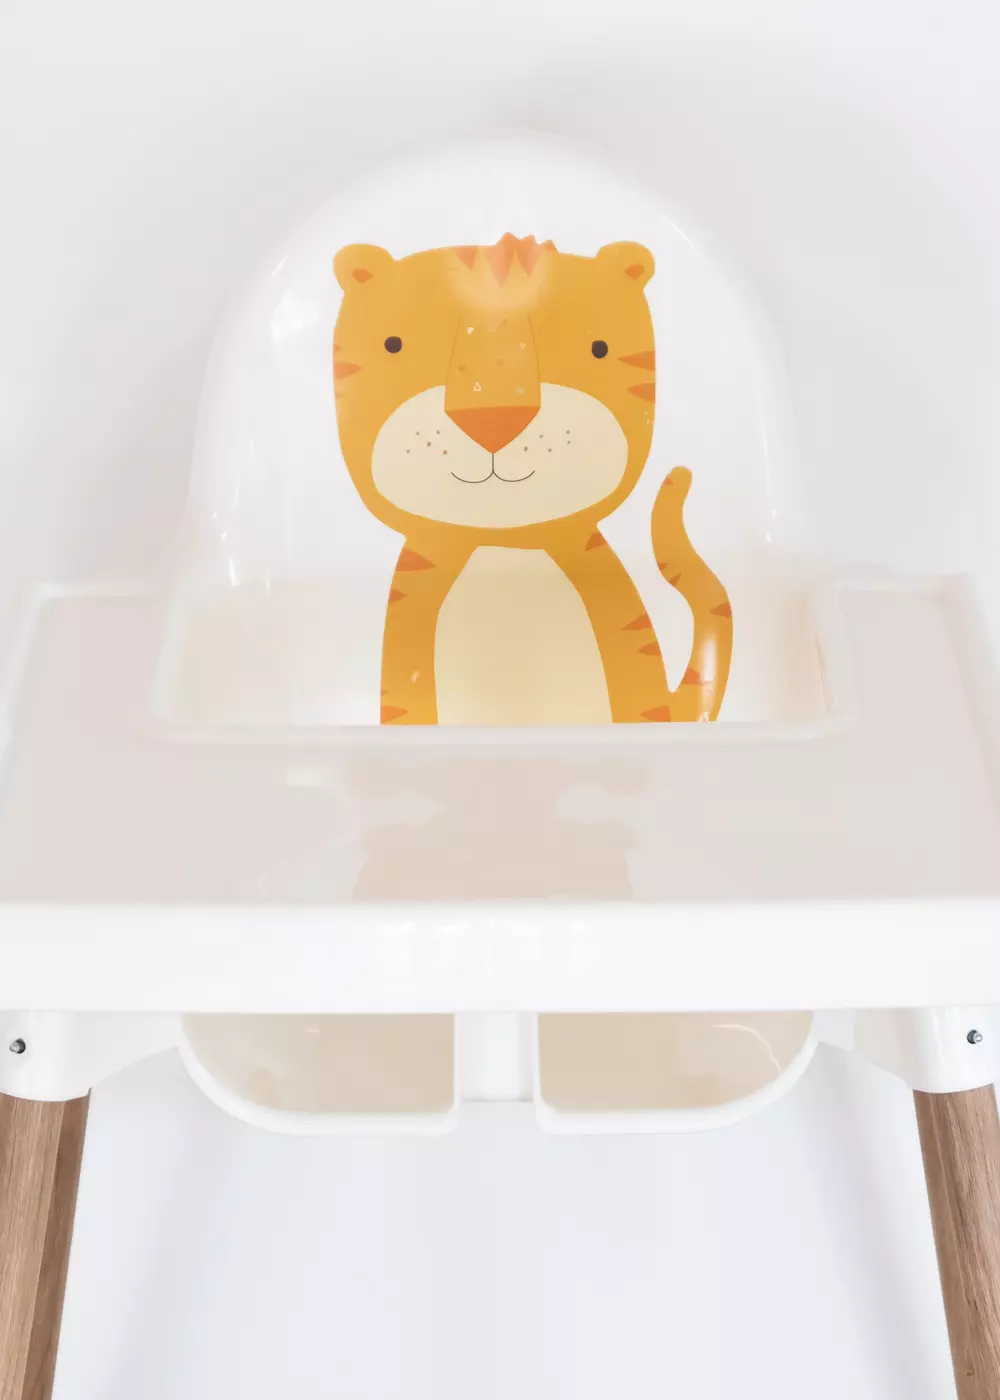 Film adhésif pour chaise haute IKEA ANTILOP motif animal tigre autocollant Accessoires Ikea